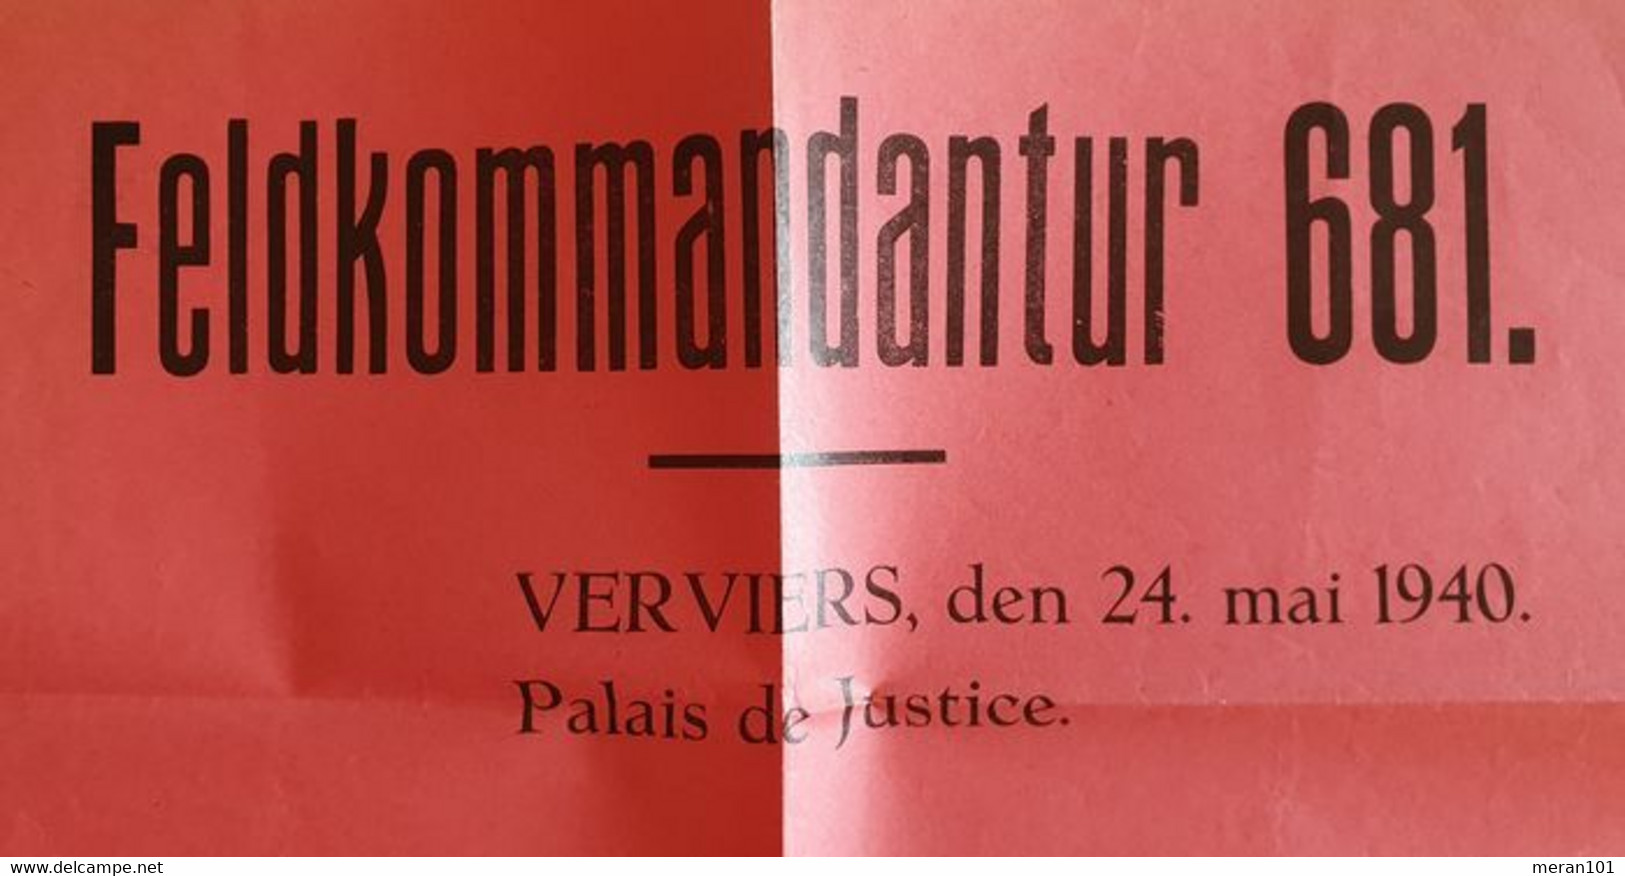 Deutsches Reich / Belgien 1940, Kundmachung Feldkommandantur 681 - Documents